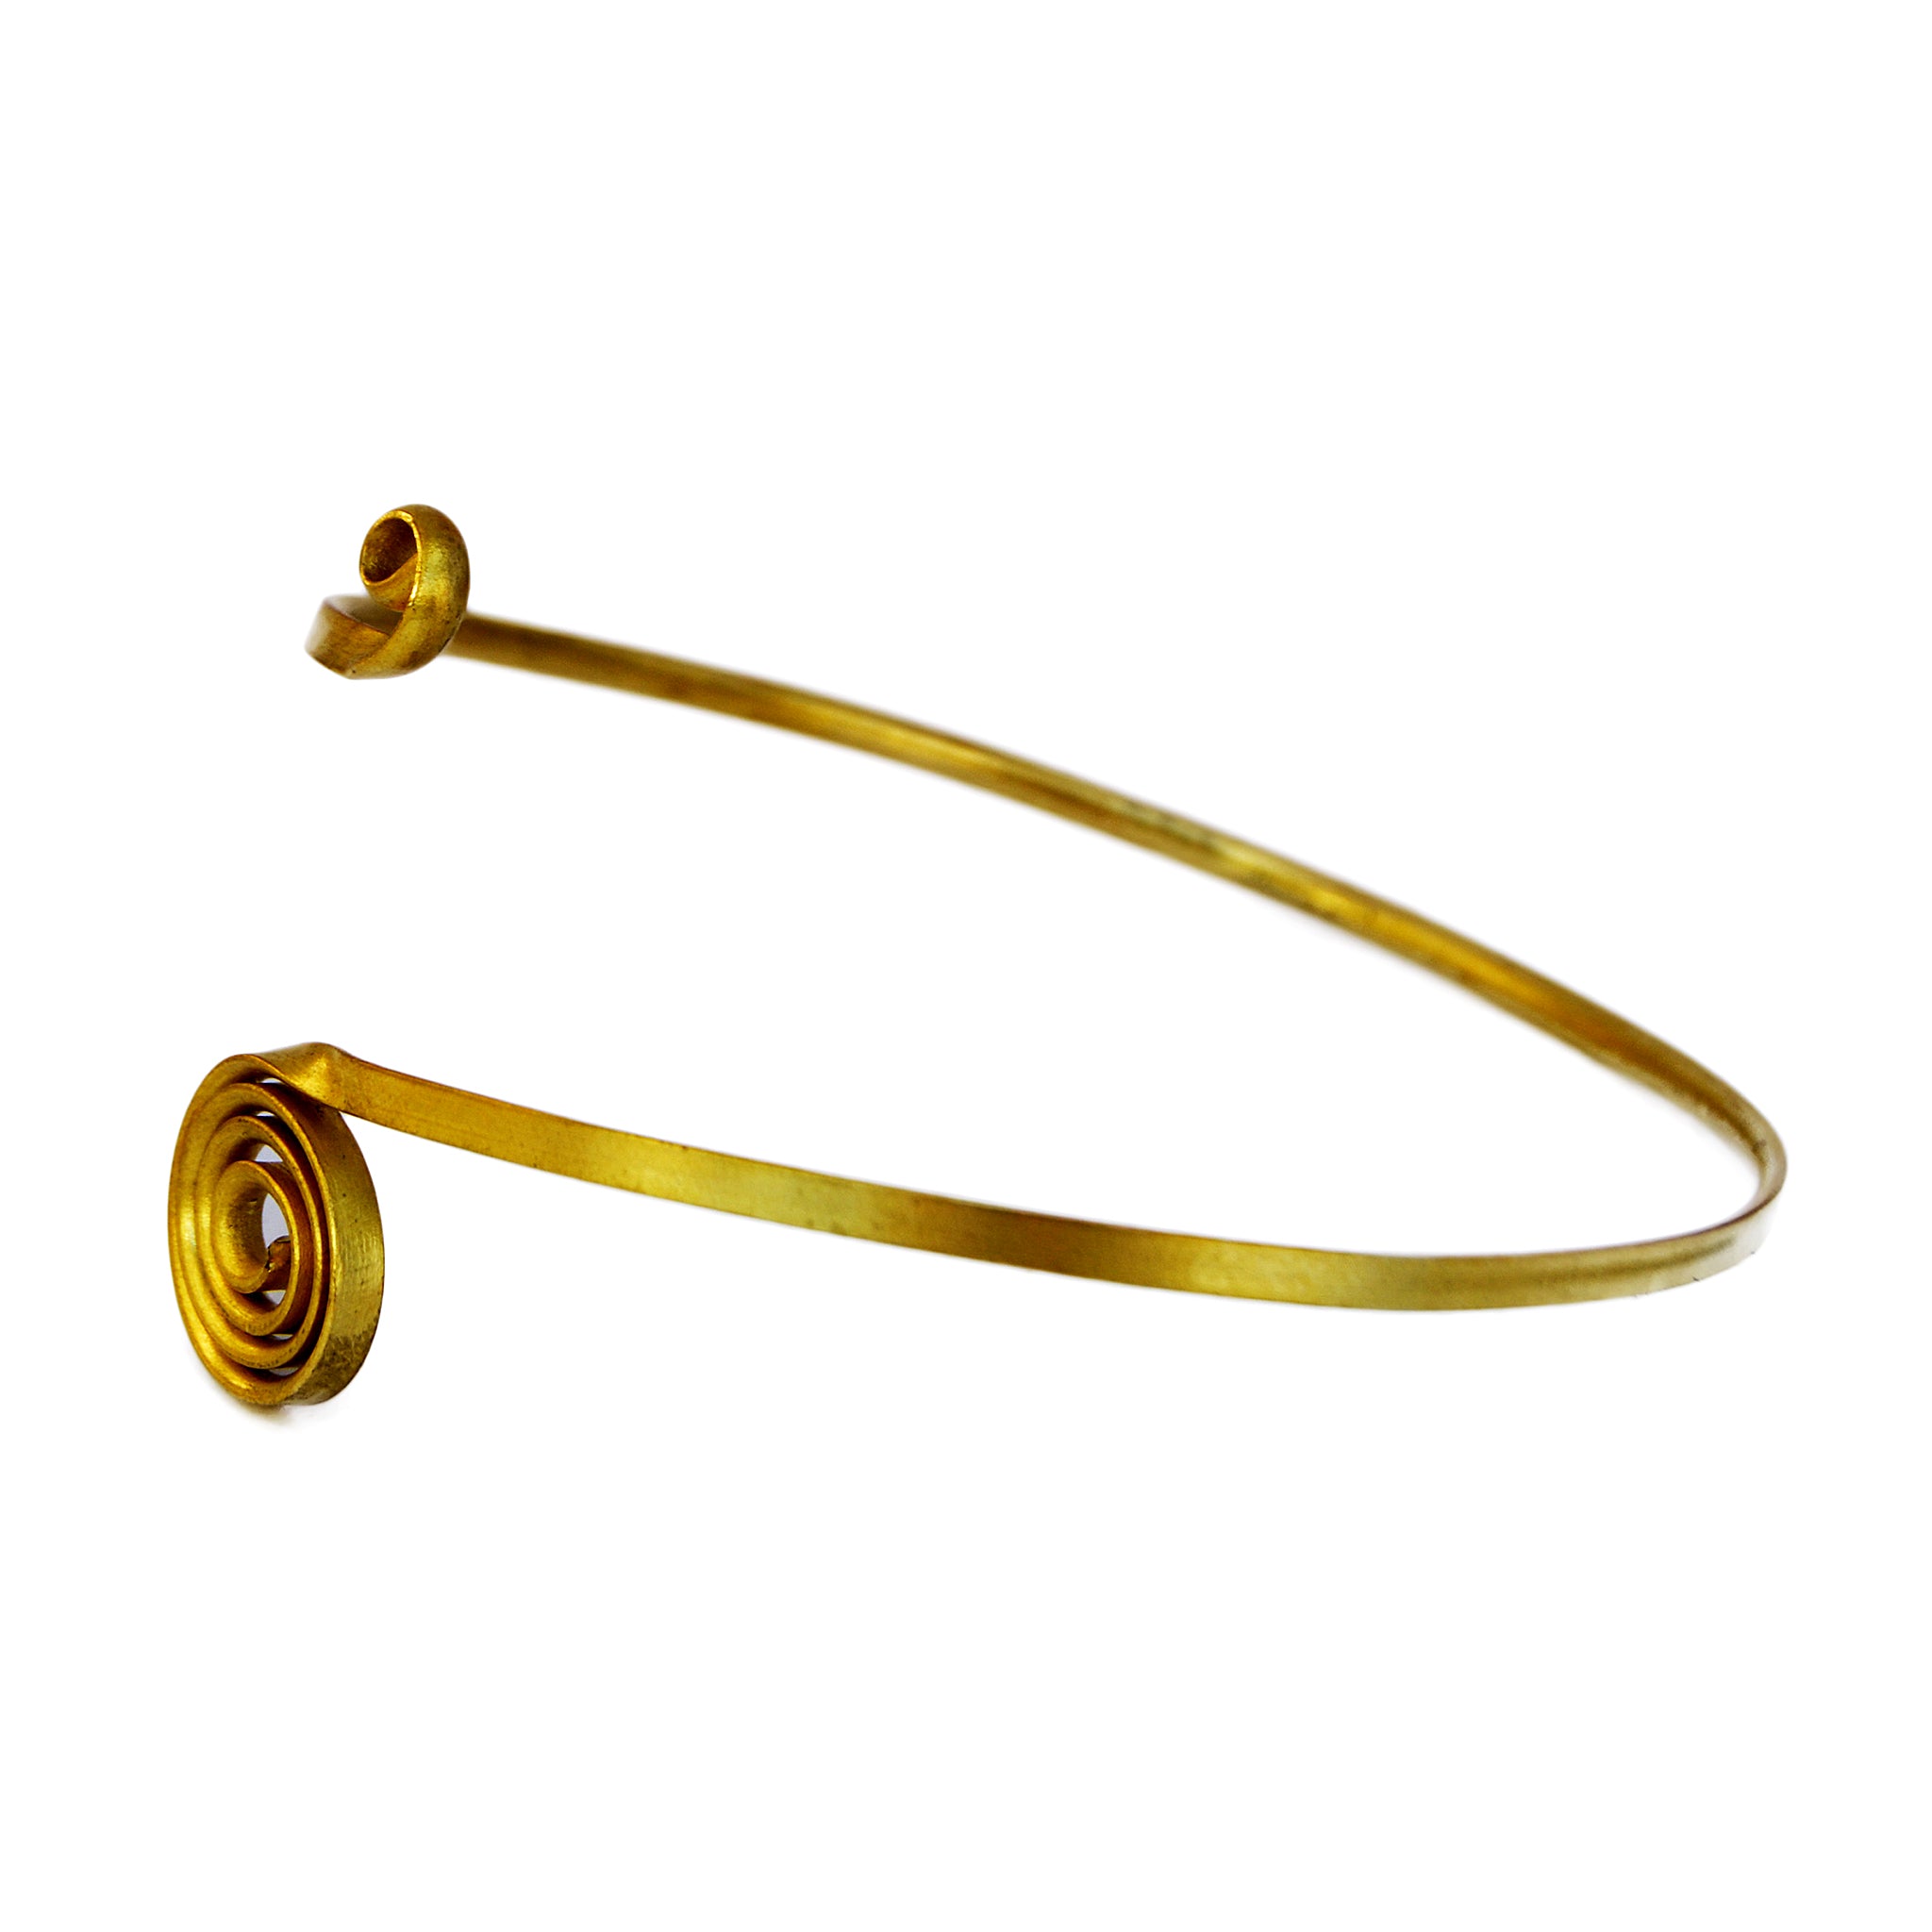 Gold brass spiral armlet